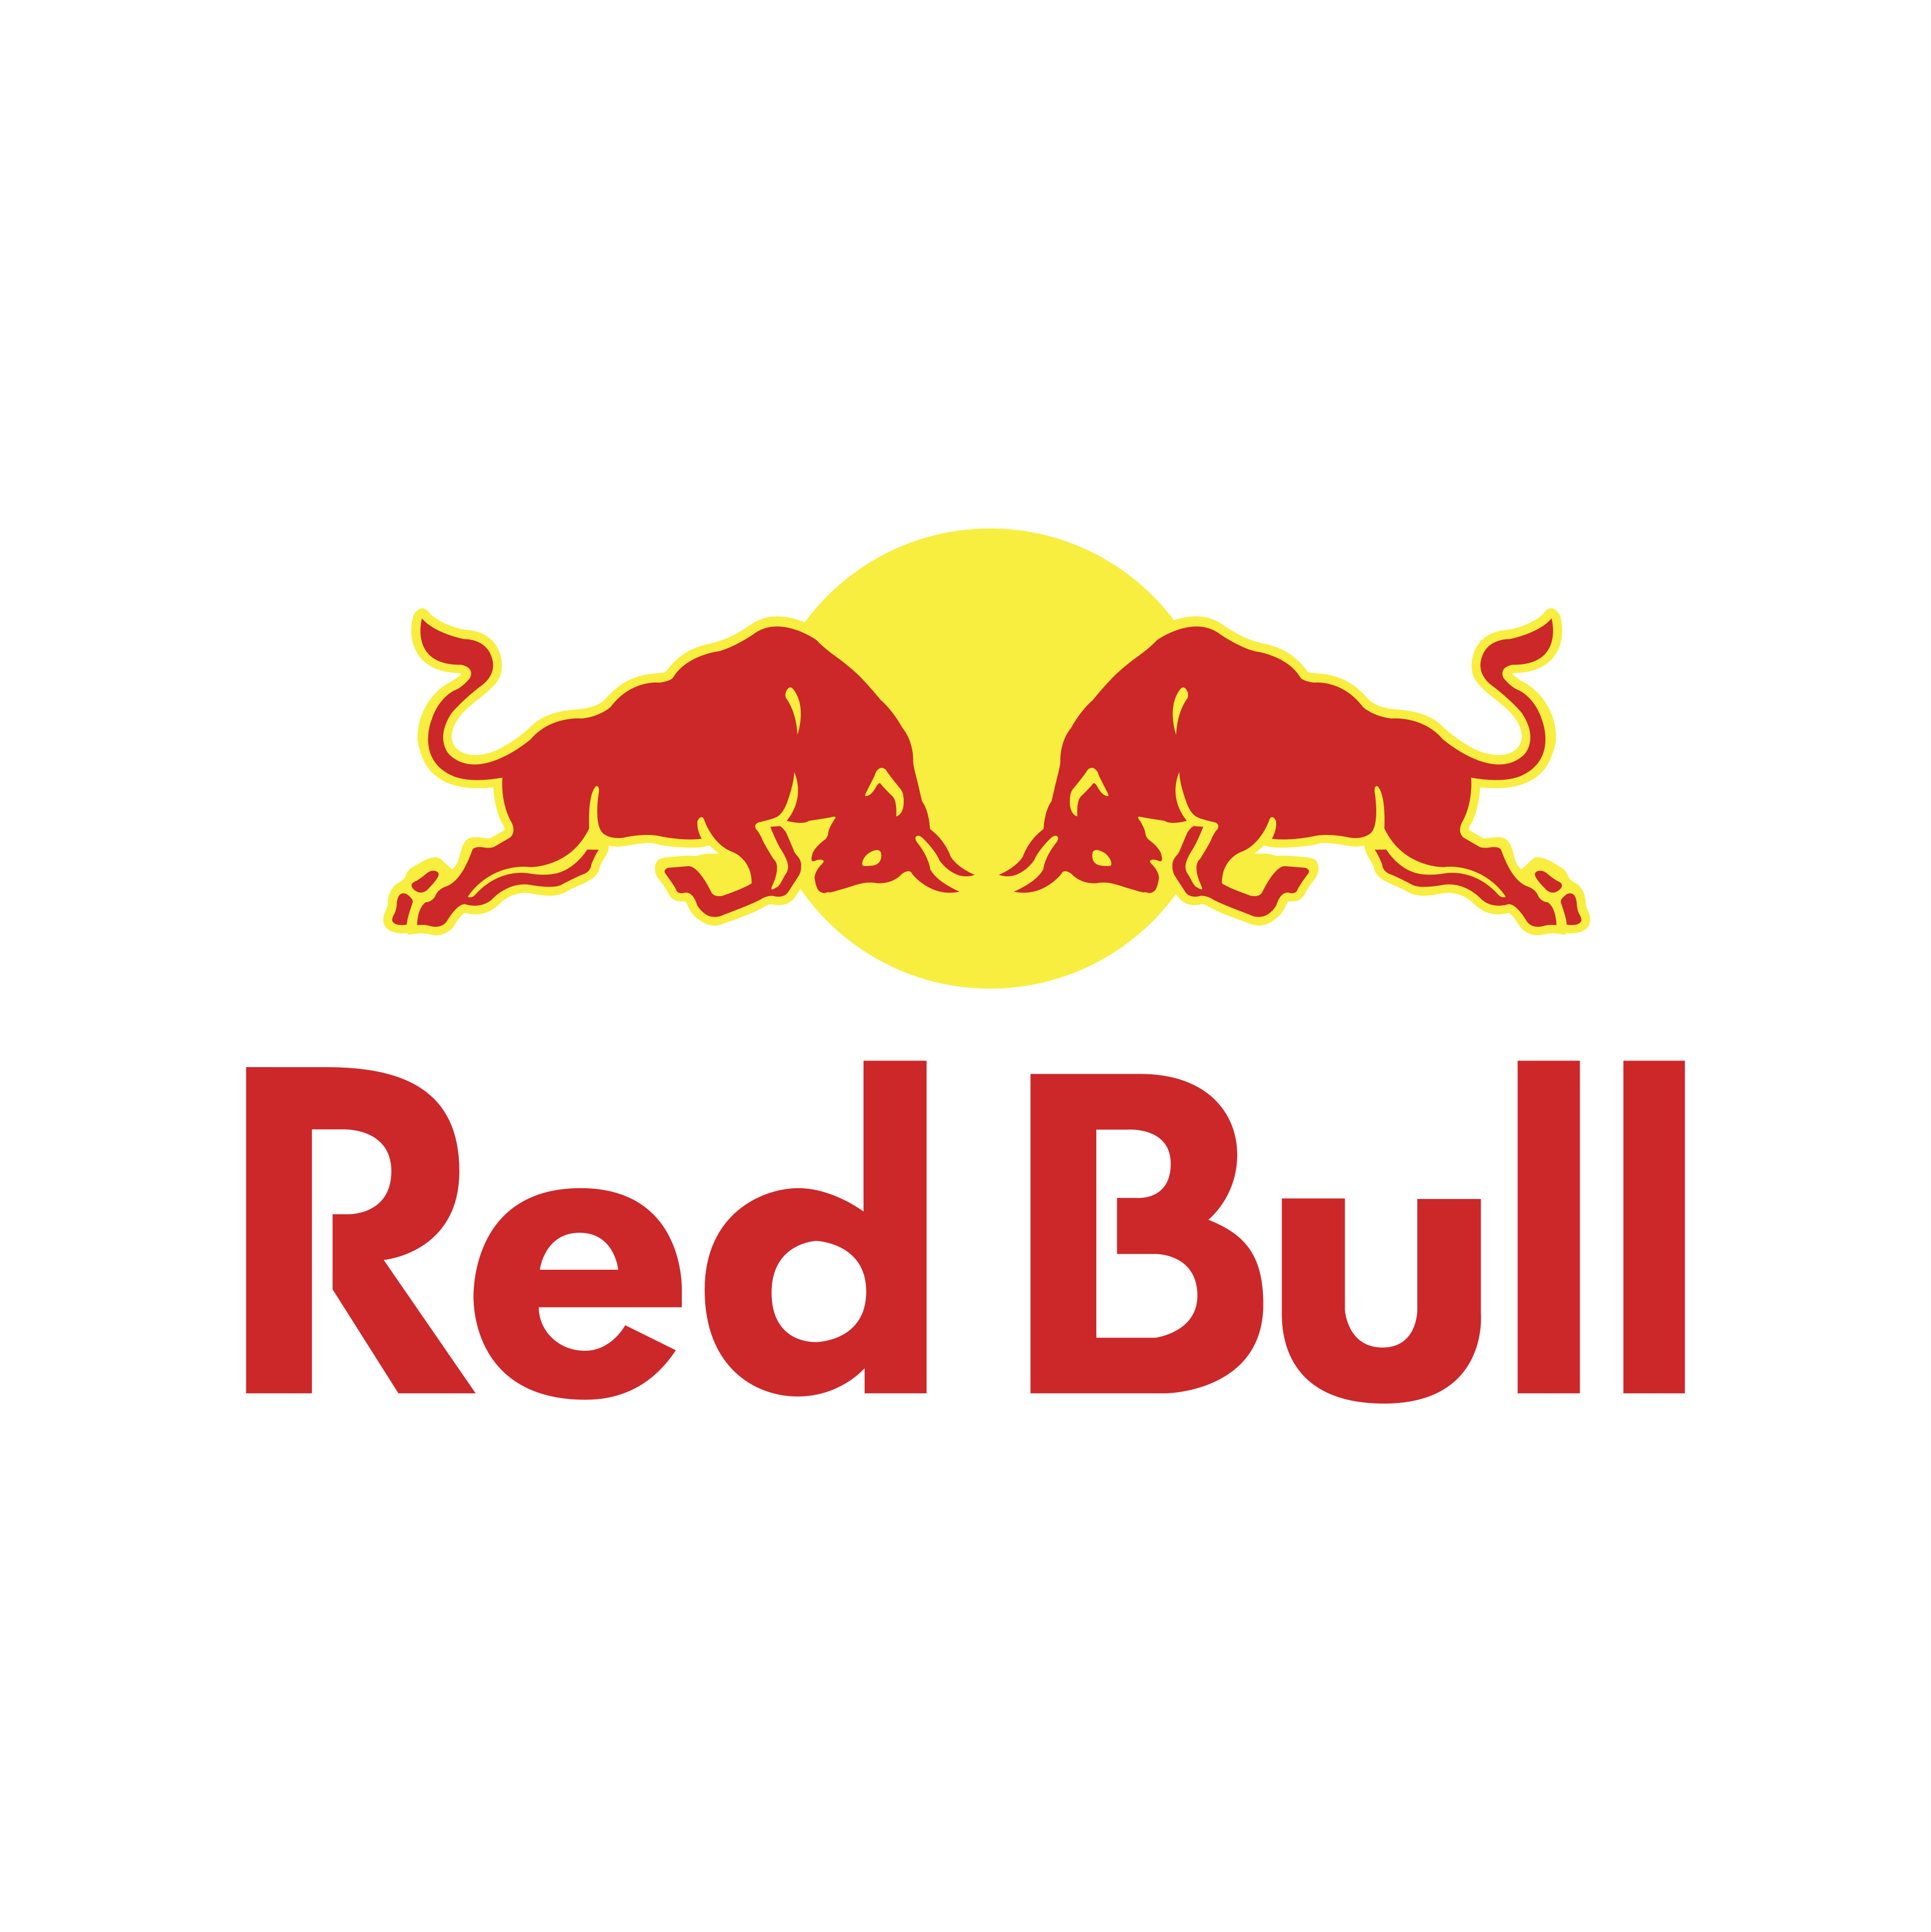 Red Bull - sprrawdź wszystkie promocje